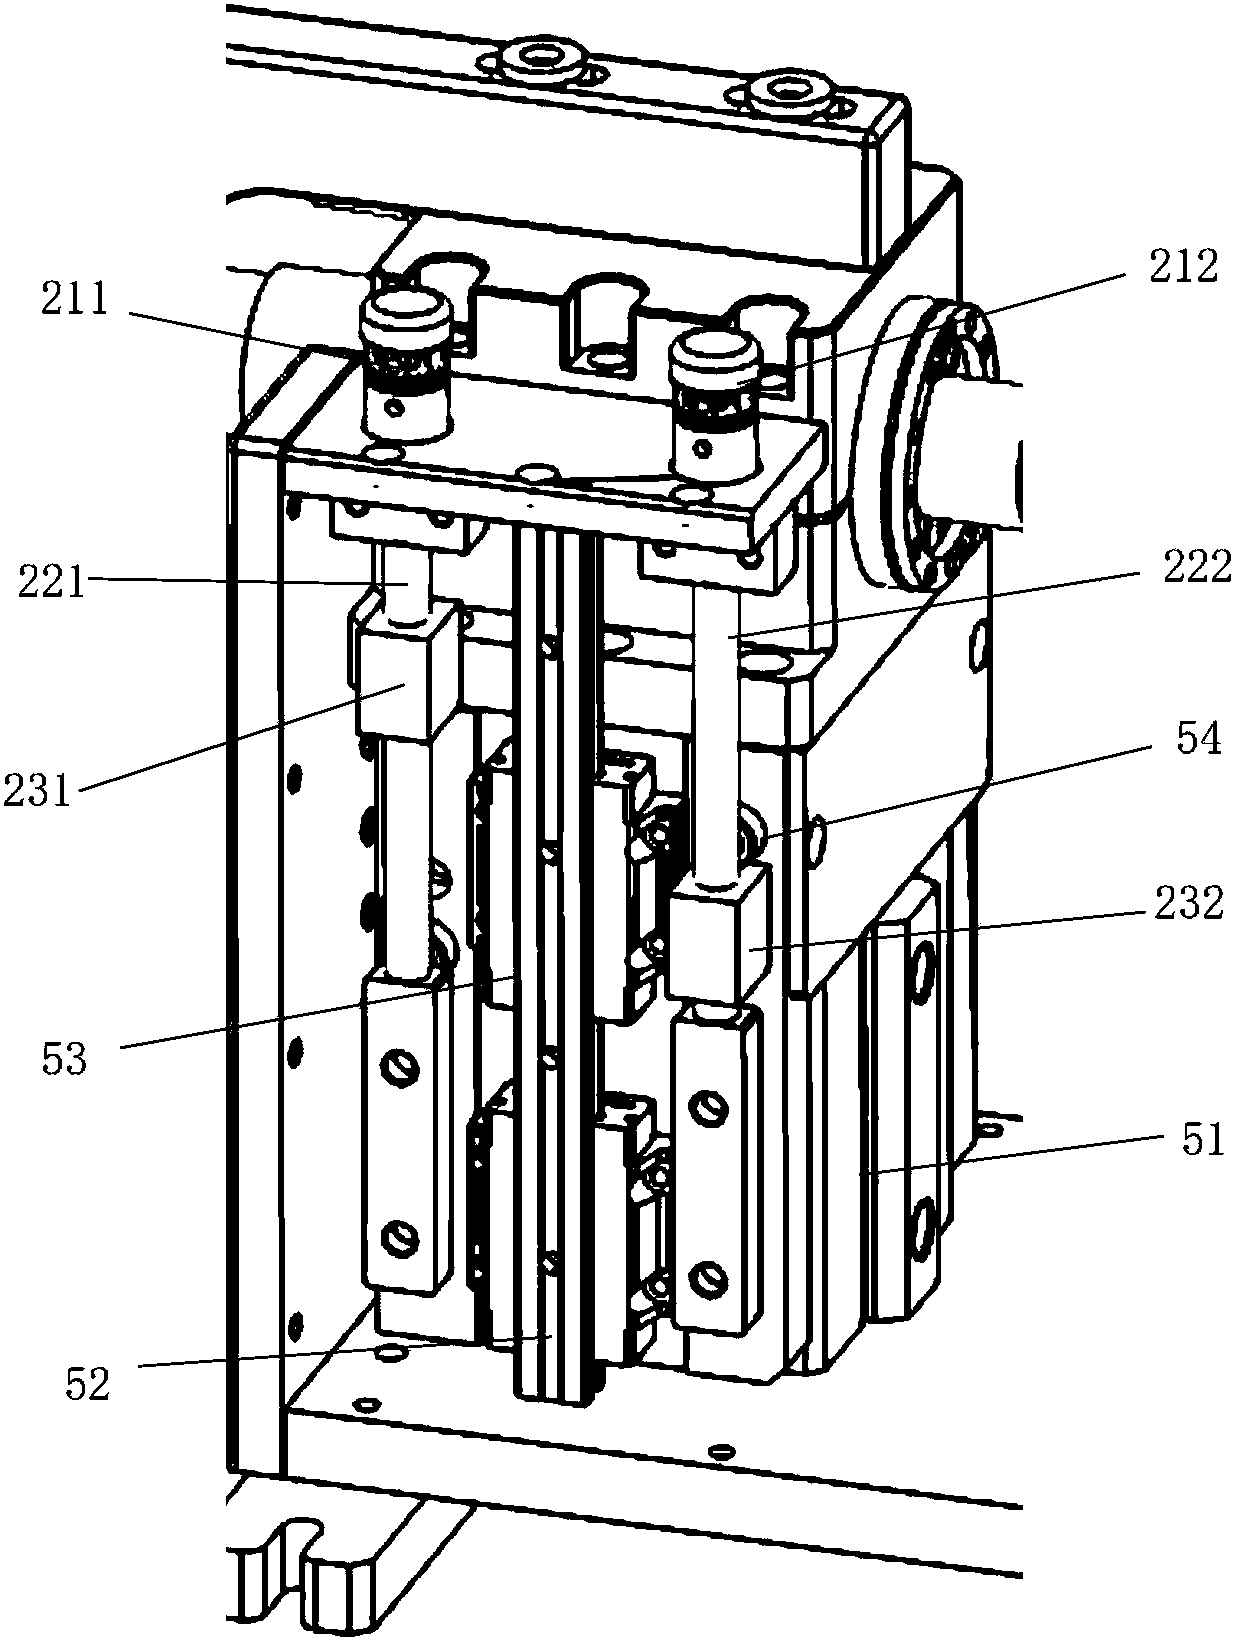 An ultrasonic welding device